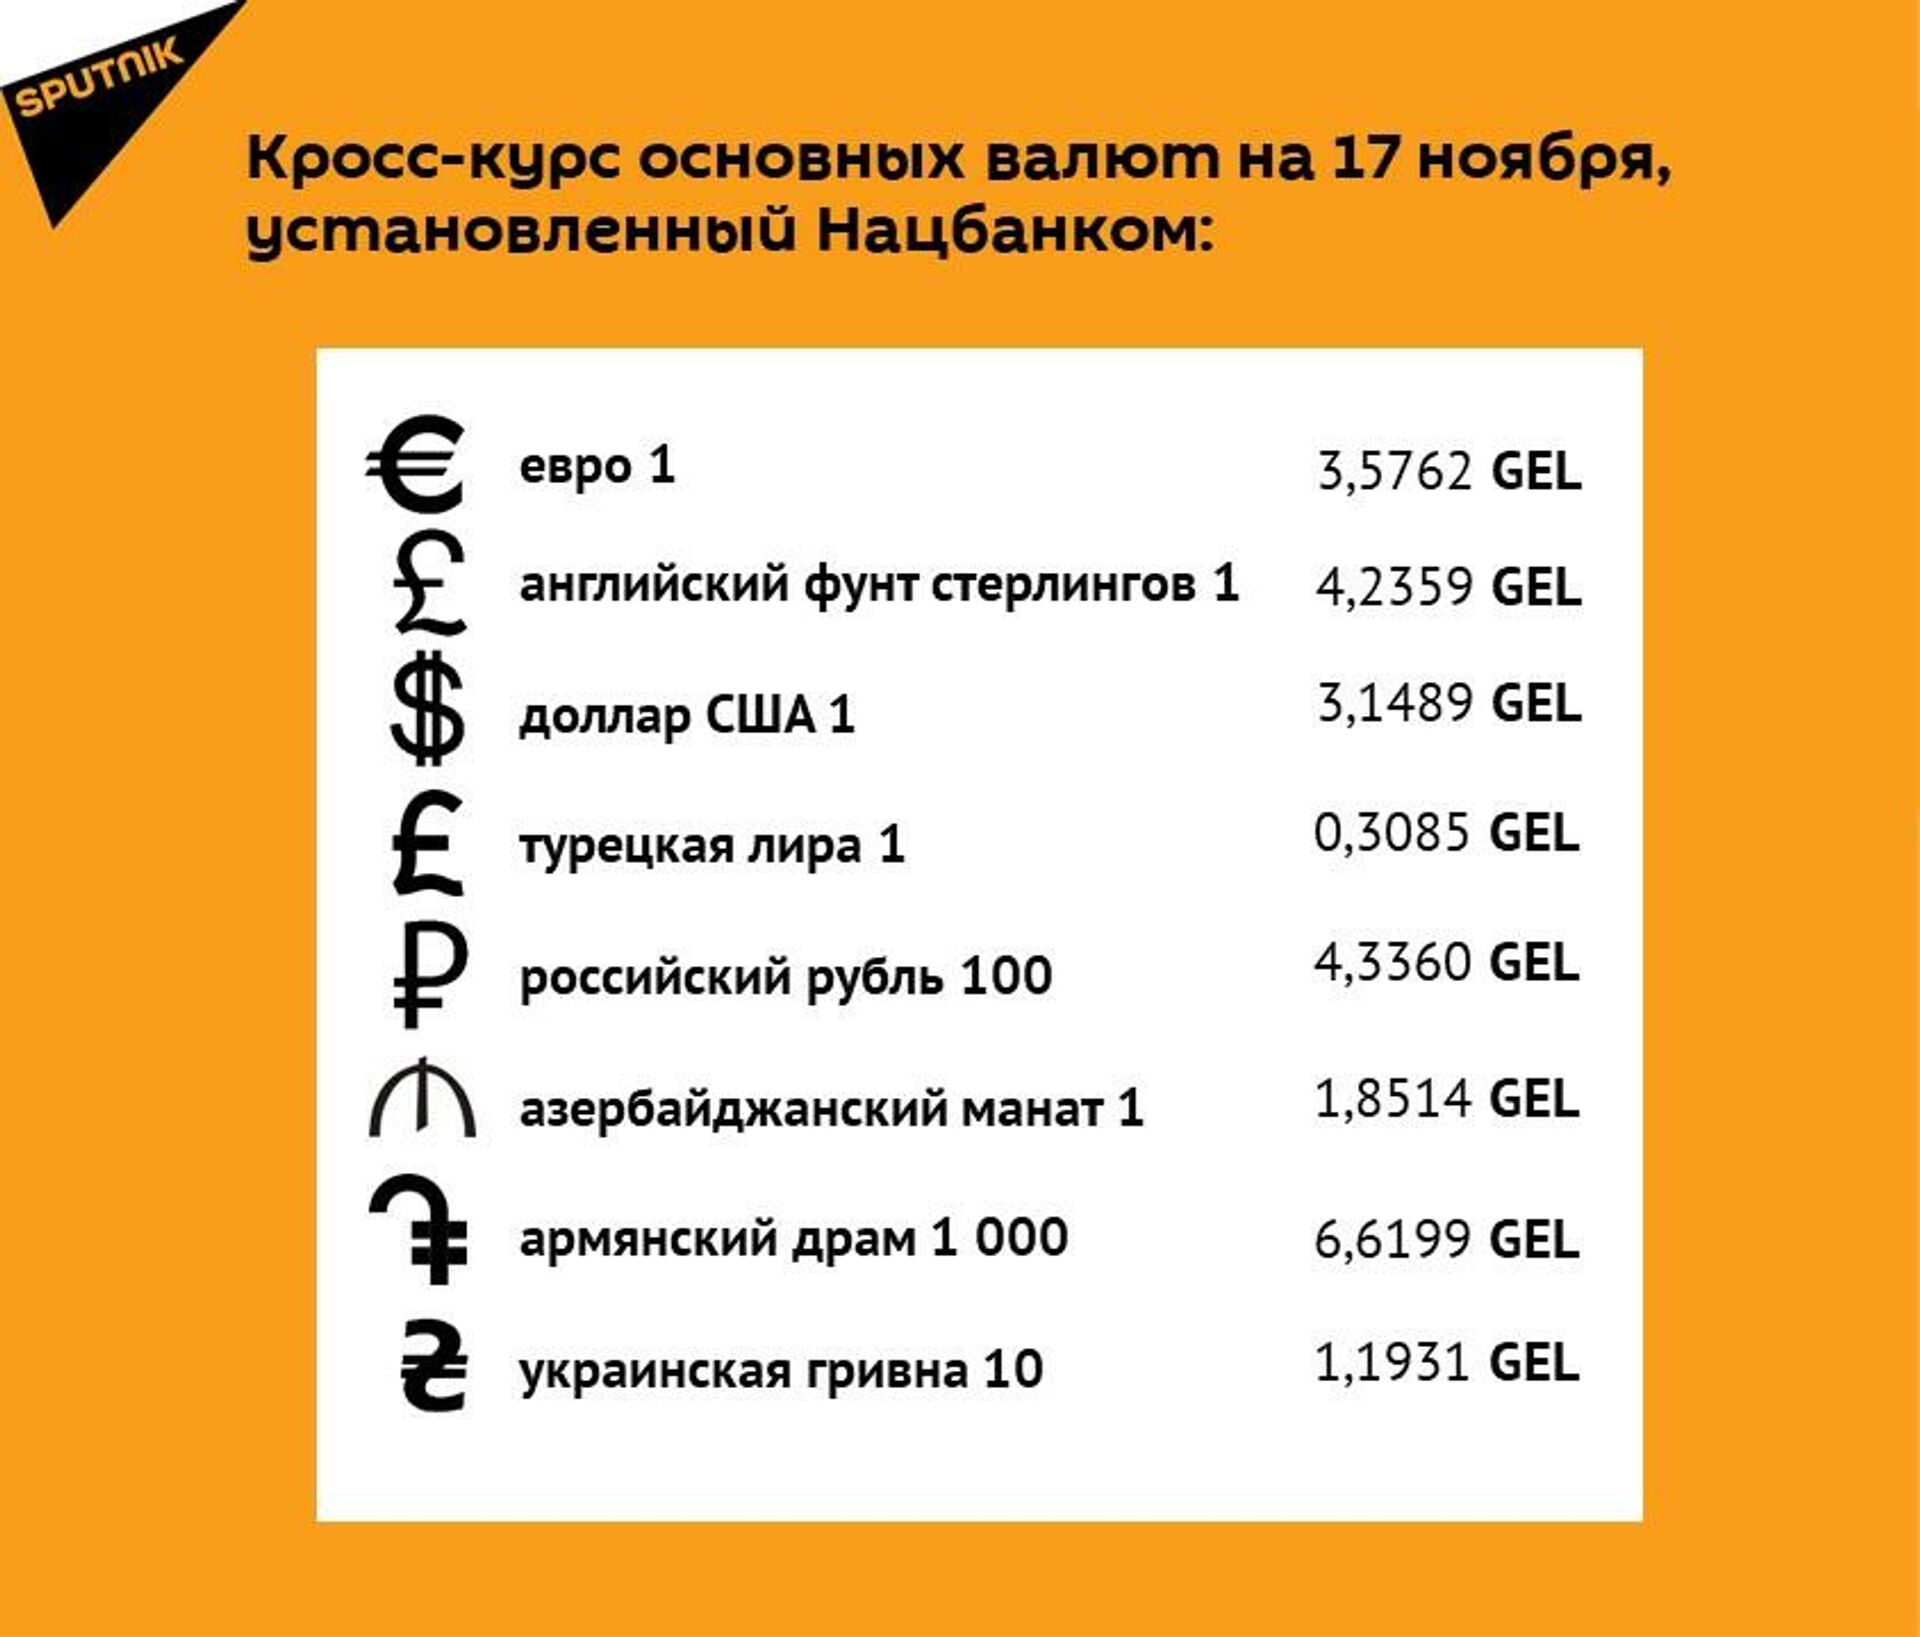 Кросс-курс основных валют на 17 ноября - Sputnik Грузия, 1920, 16.11.2021